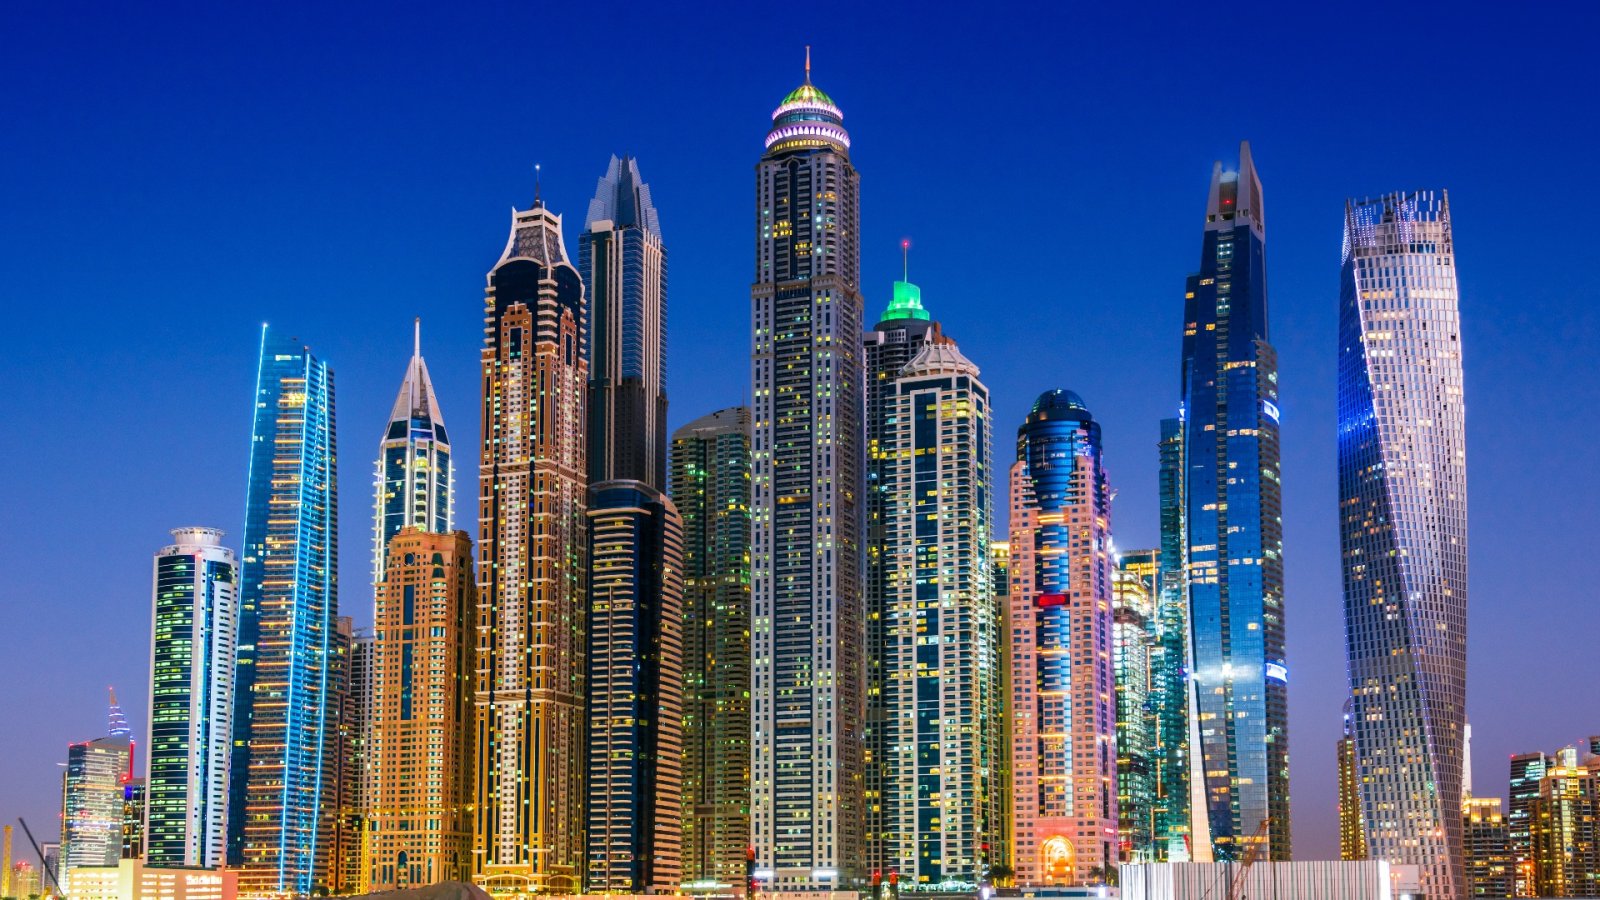 Nova godina, nove luksuzne kuće: skupe rezidencije u Dubaiju